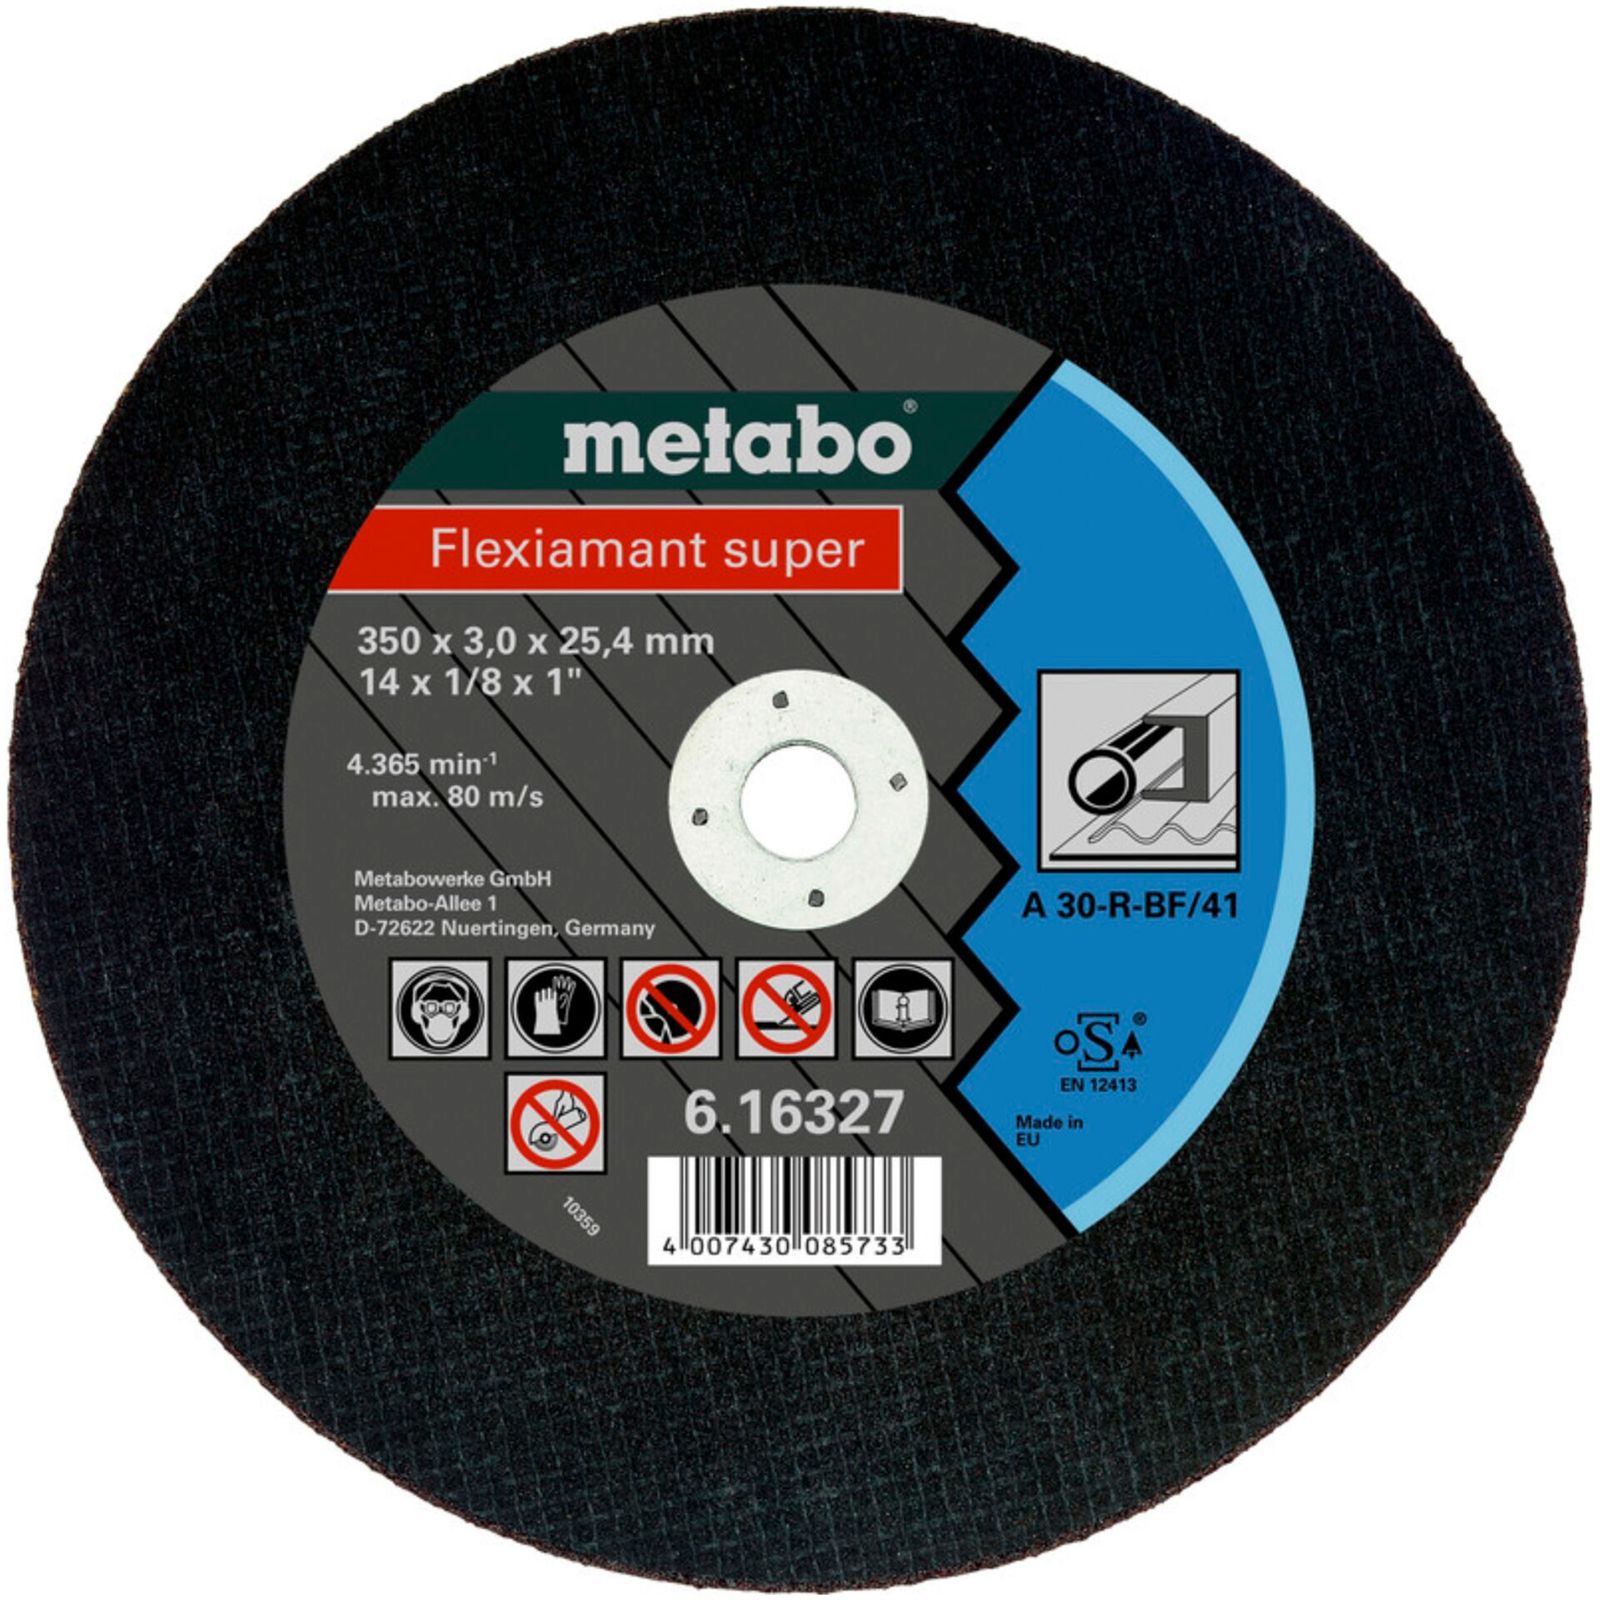 Metabo Flexiamant super 350x3,0x 25,4 acciaio